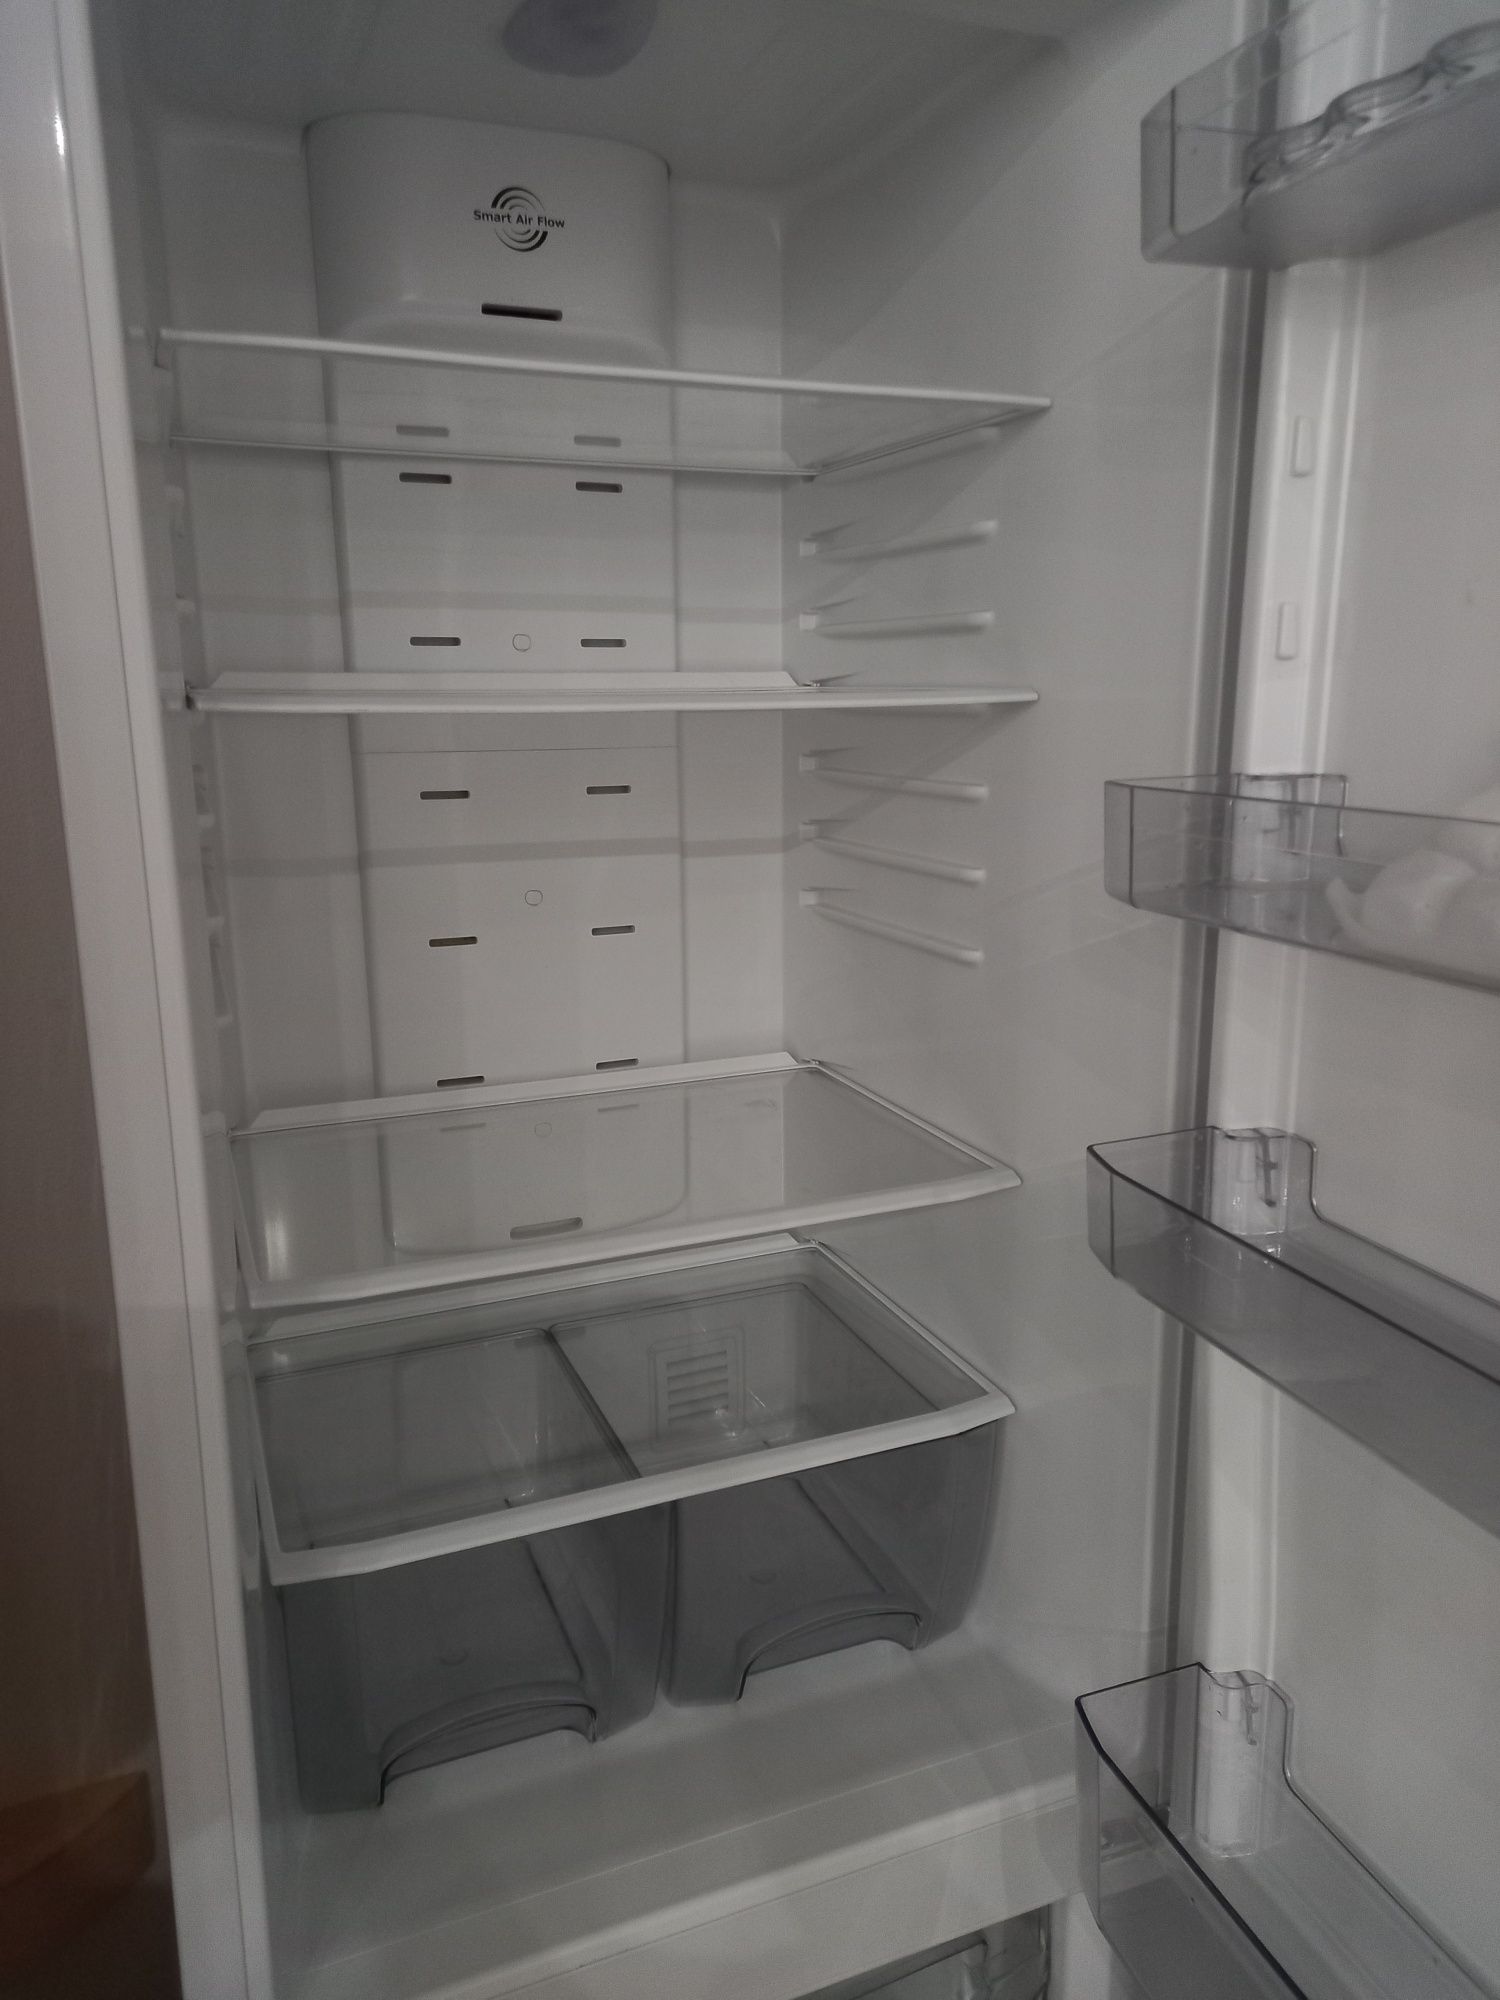 Холодильник Атлант 190